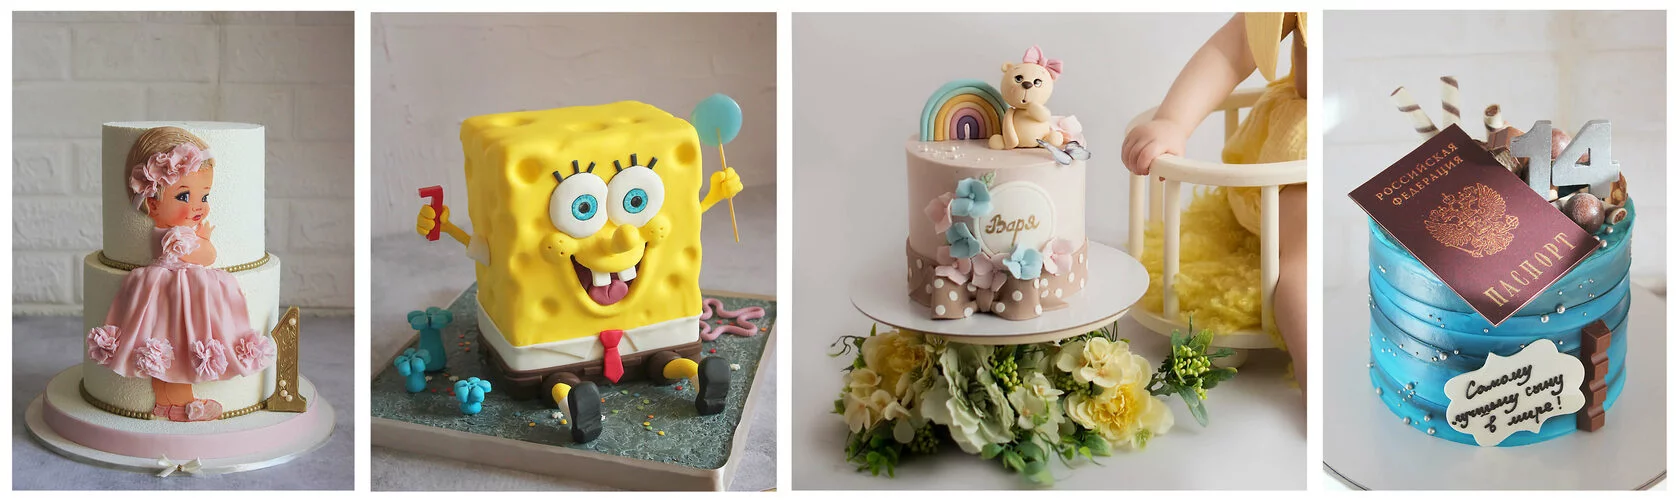 Заказать торт на день рождения девушке | Купить торты на заказ в Санкт-Петербурге с доставкой